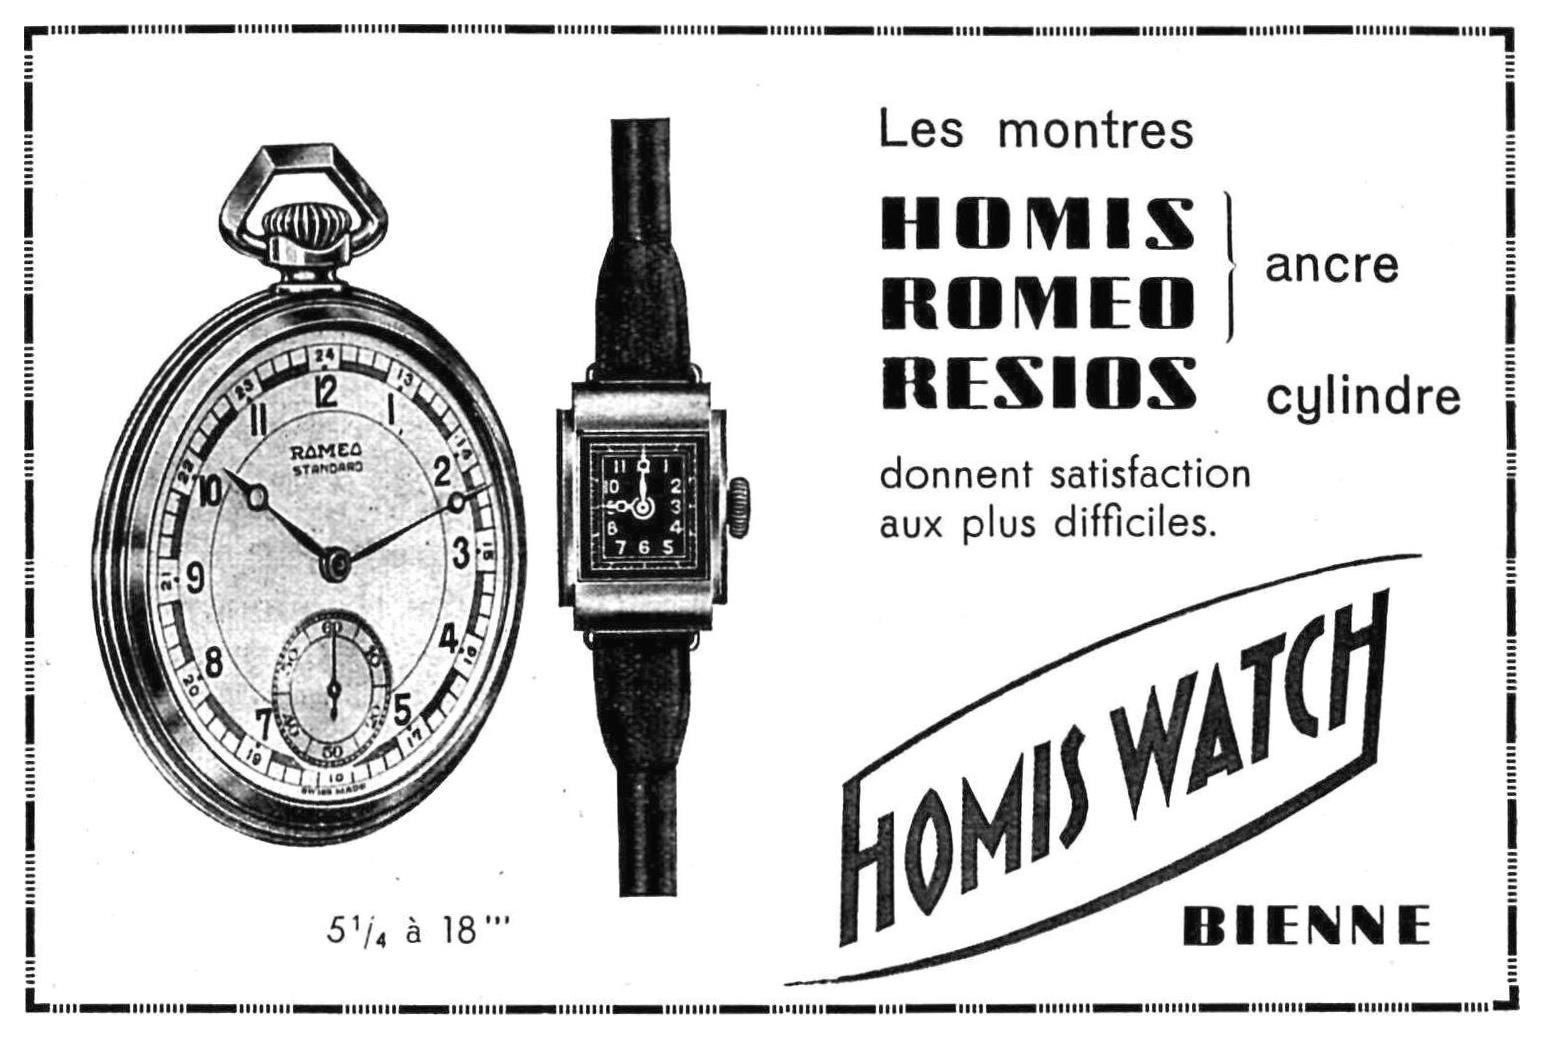 Homis 1939 0.jpg